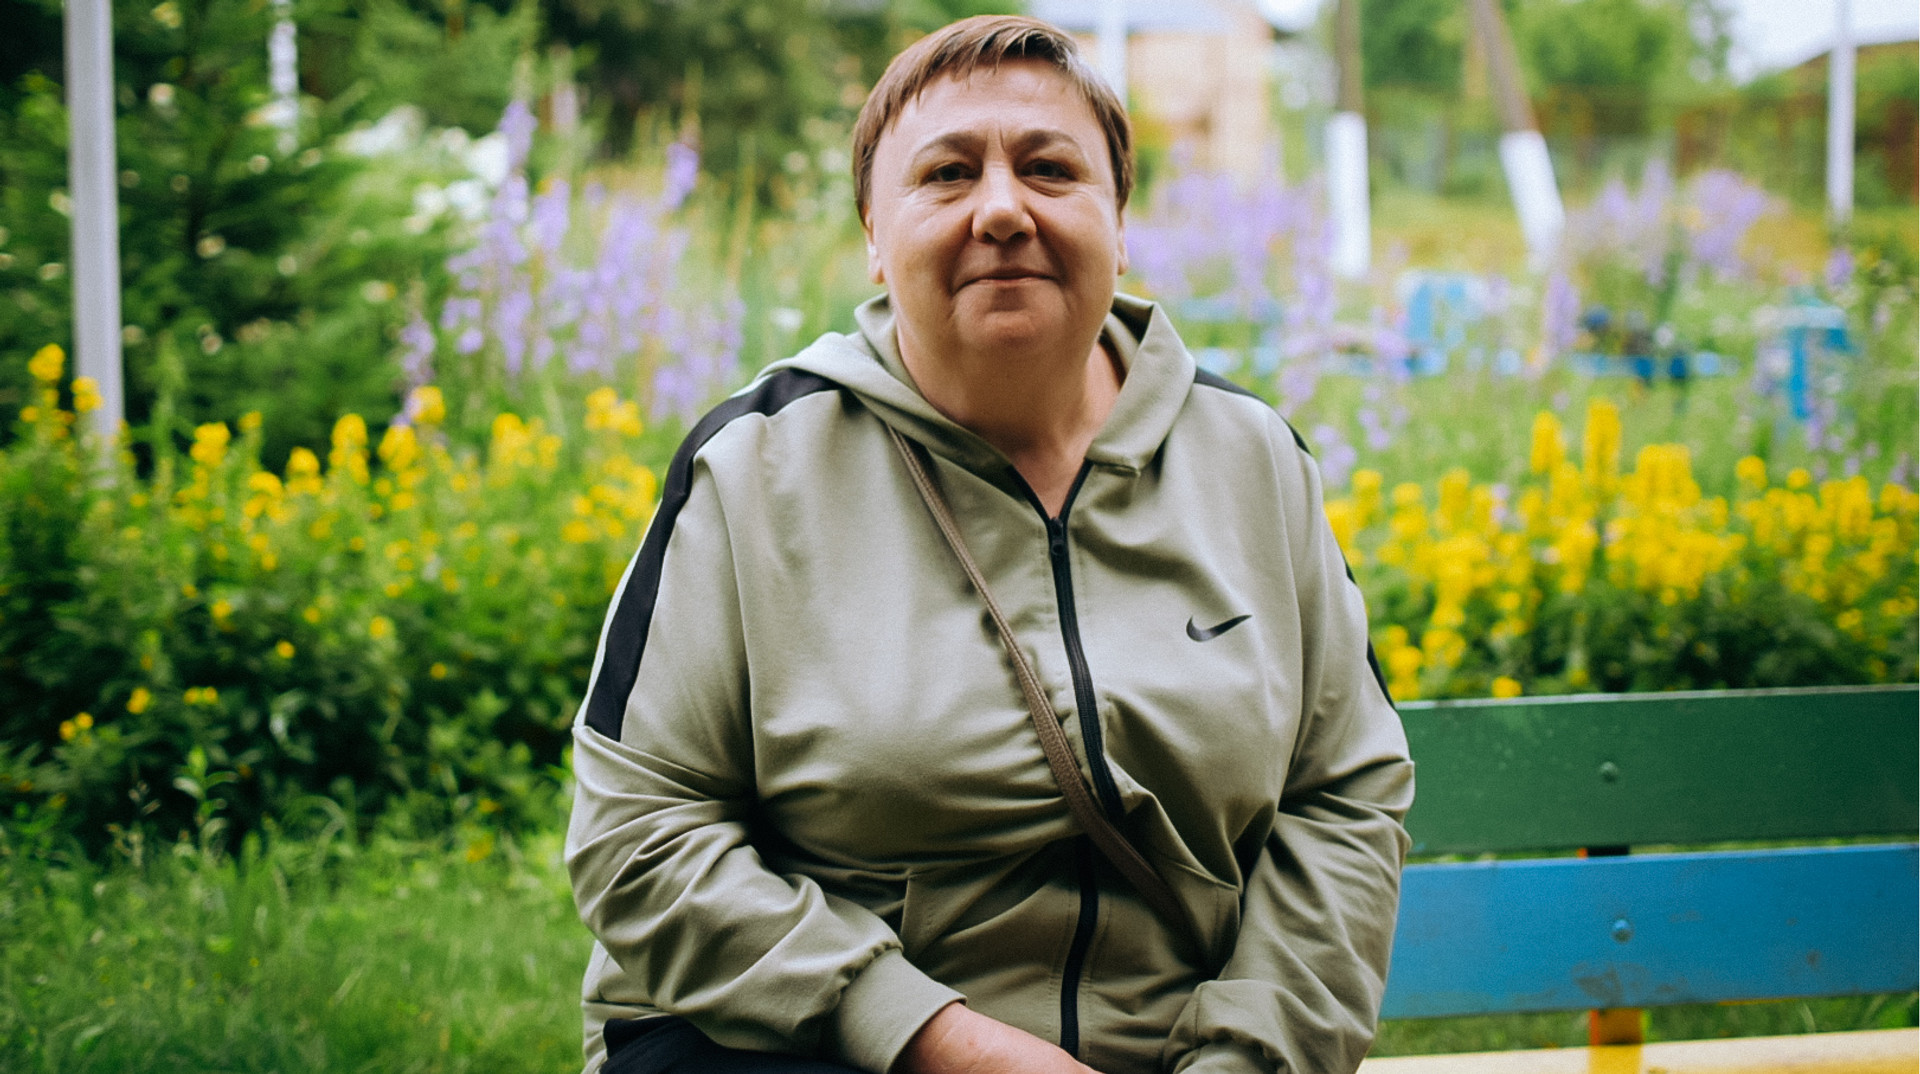 Ні одружитися, ні офіційно працювати. Історія жінки з Київщини, яка майже 30 років жила без паспорта